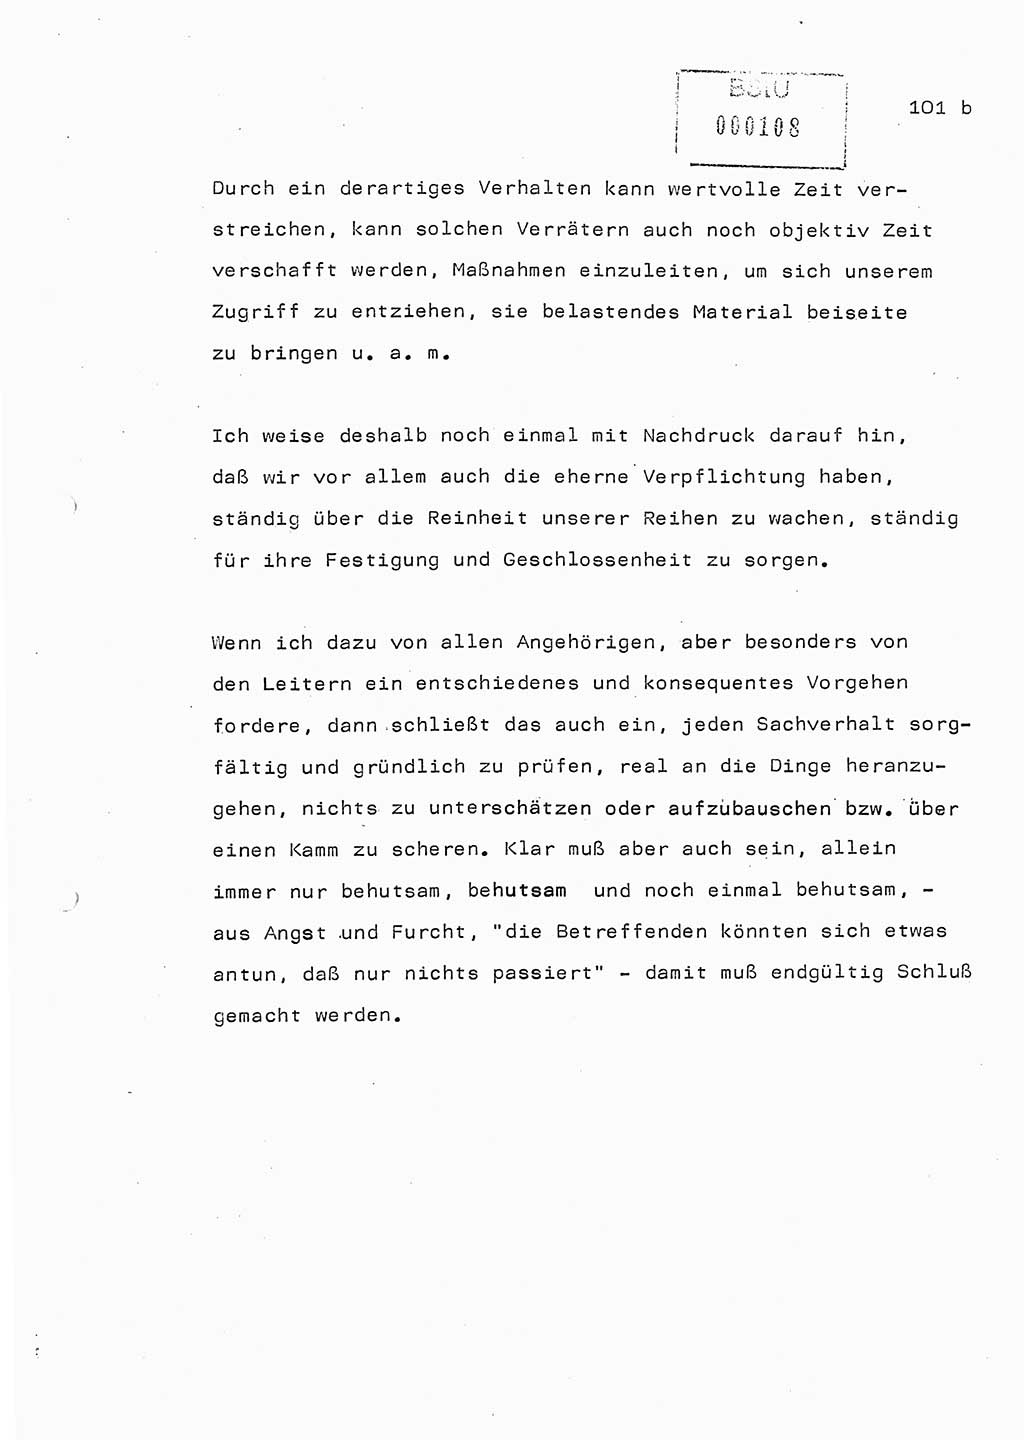 Referat (Generaloberst Erich Mielke) auf der Zentralen Dienstkonferenz am 24.5.1979 [Ministerium für Staatssicherheit (MfS), Deutsche Demokratische Republik (DDR), Der Minister], Berlin 1979, Seite 101/2 (Ref. DK DDR MfS Min. /79 1979, S. 101/2)